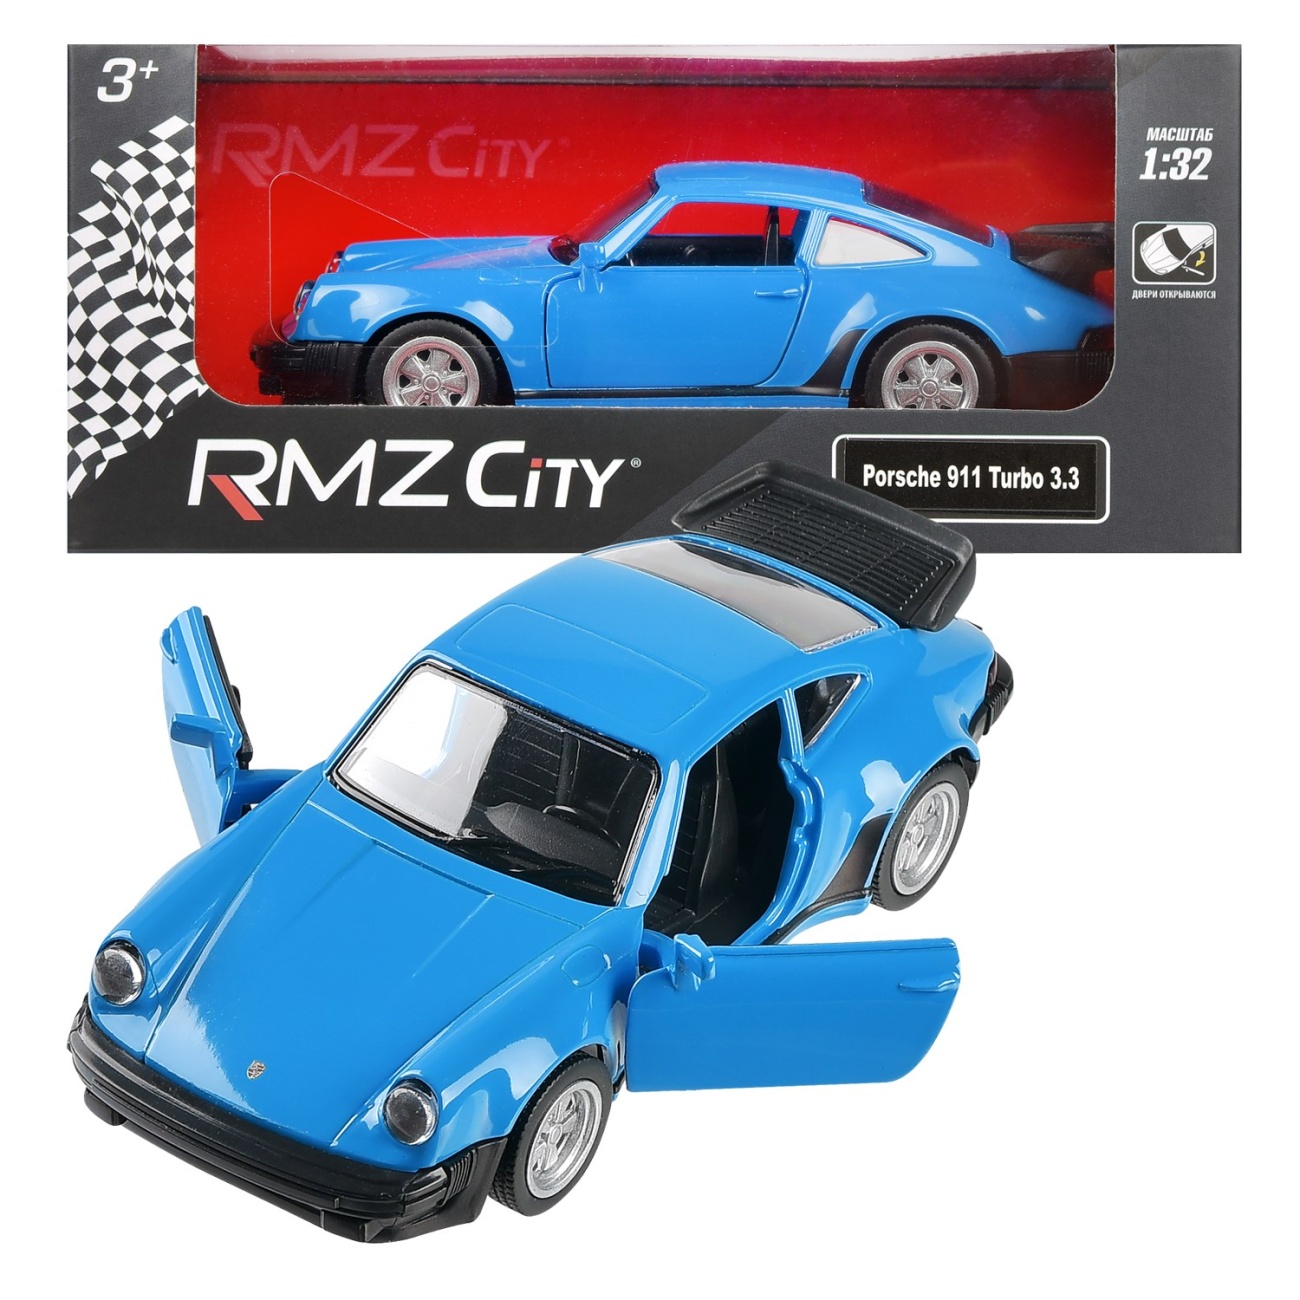 Машина металл. RMZ City серия 1:32 Porsche 930 Turbo (1975-1989) синий цвет, инерция, открытие дверий Uni-Fortune 554064BL